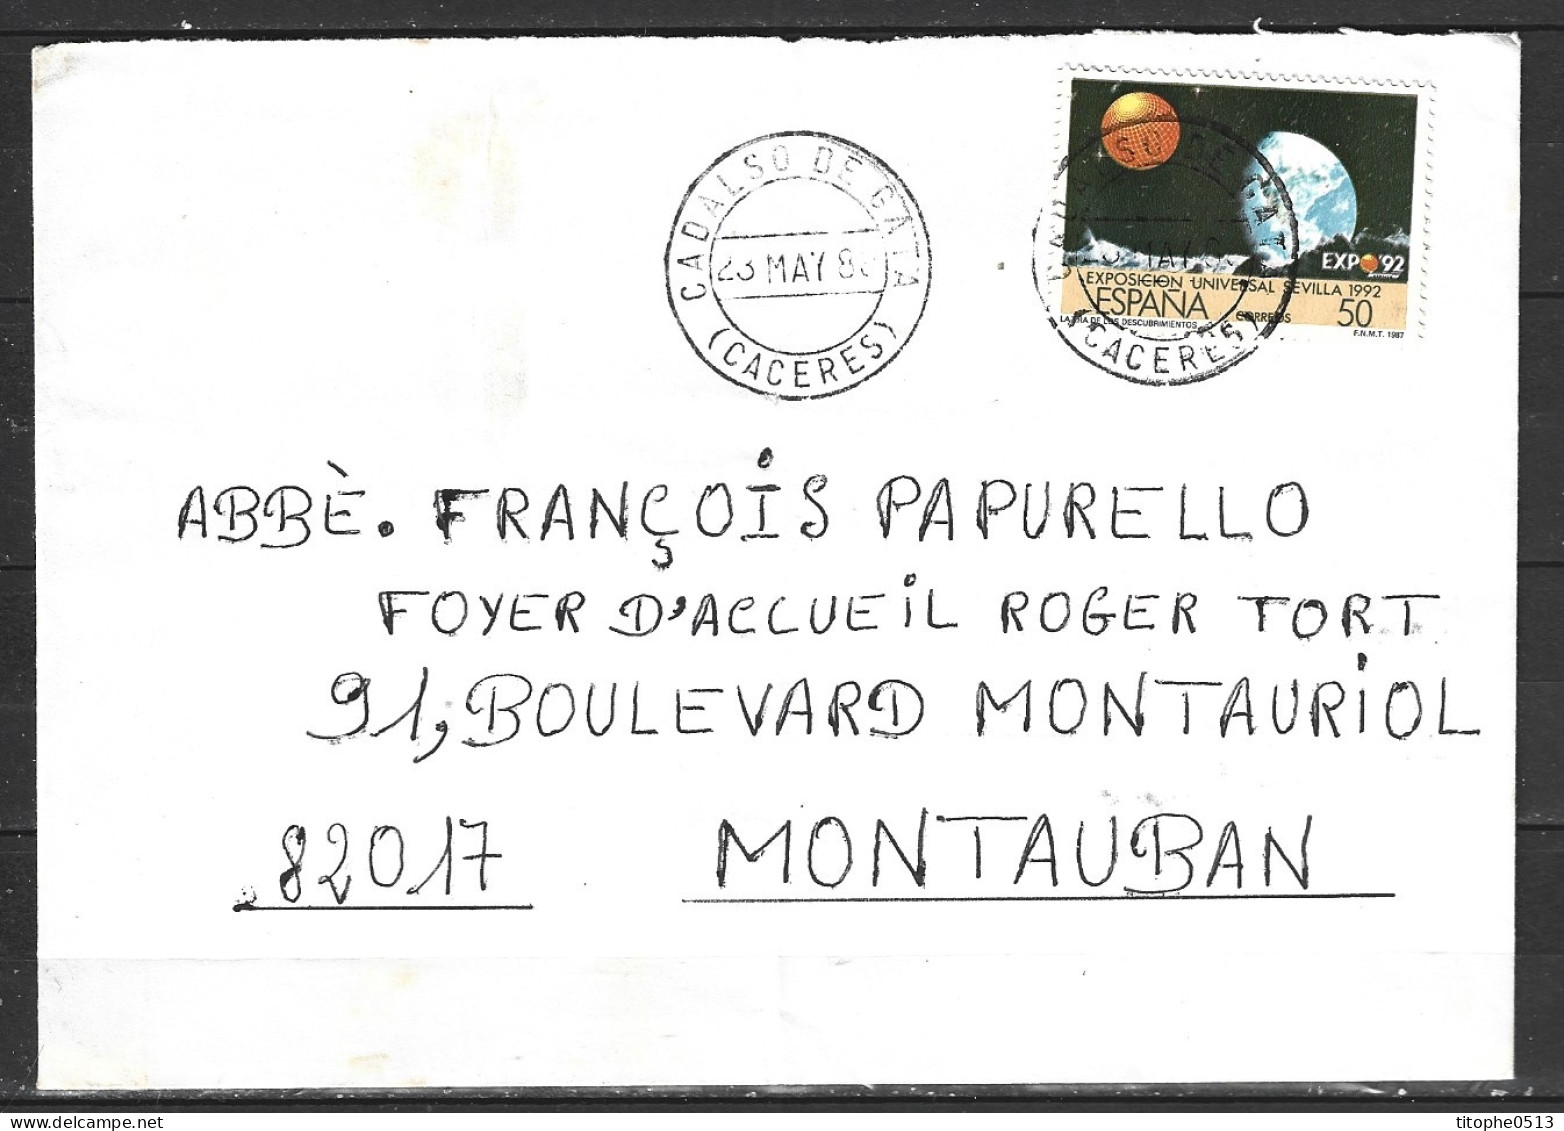 ESPAGNE. N°2544 De 1987 Sur Enveloppe Ayant Circulé. Expo'92. - 1992 – Séville (Espagne)